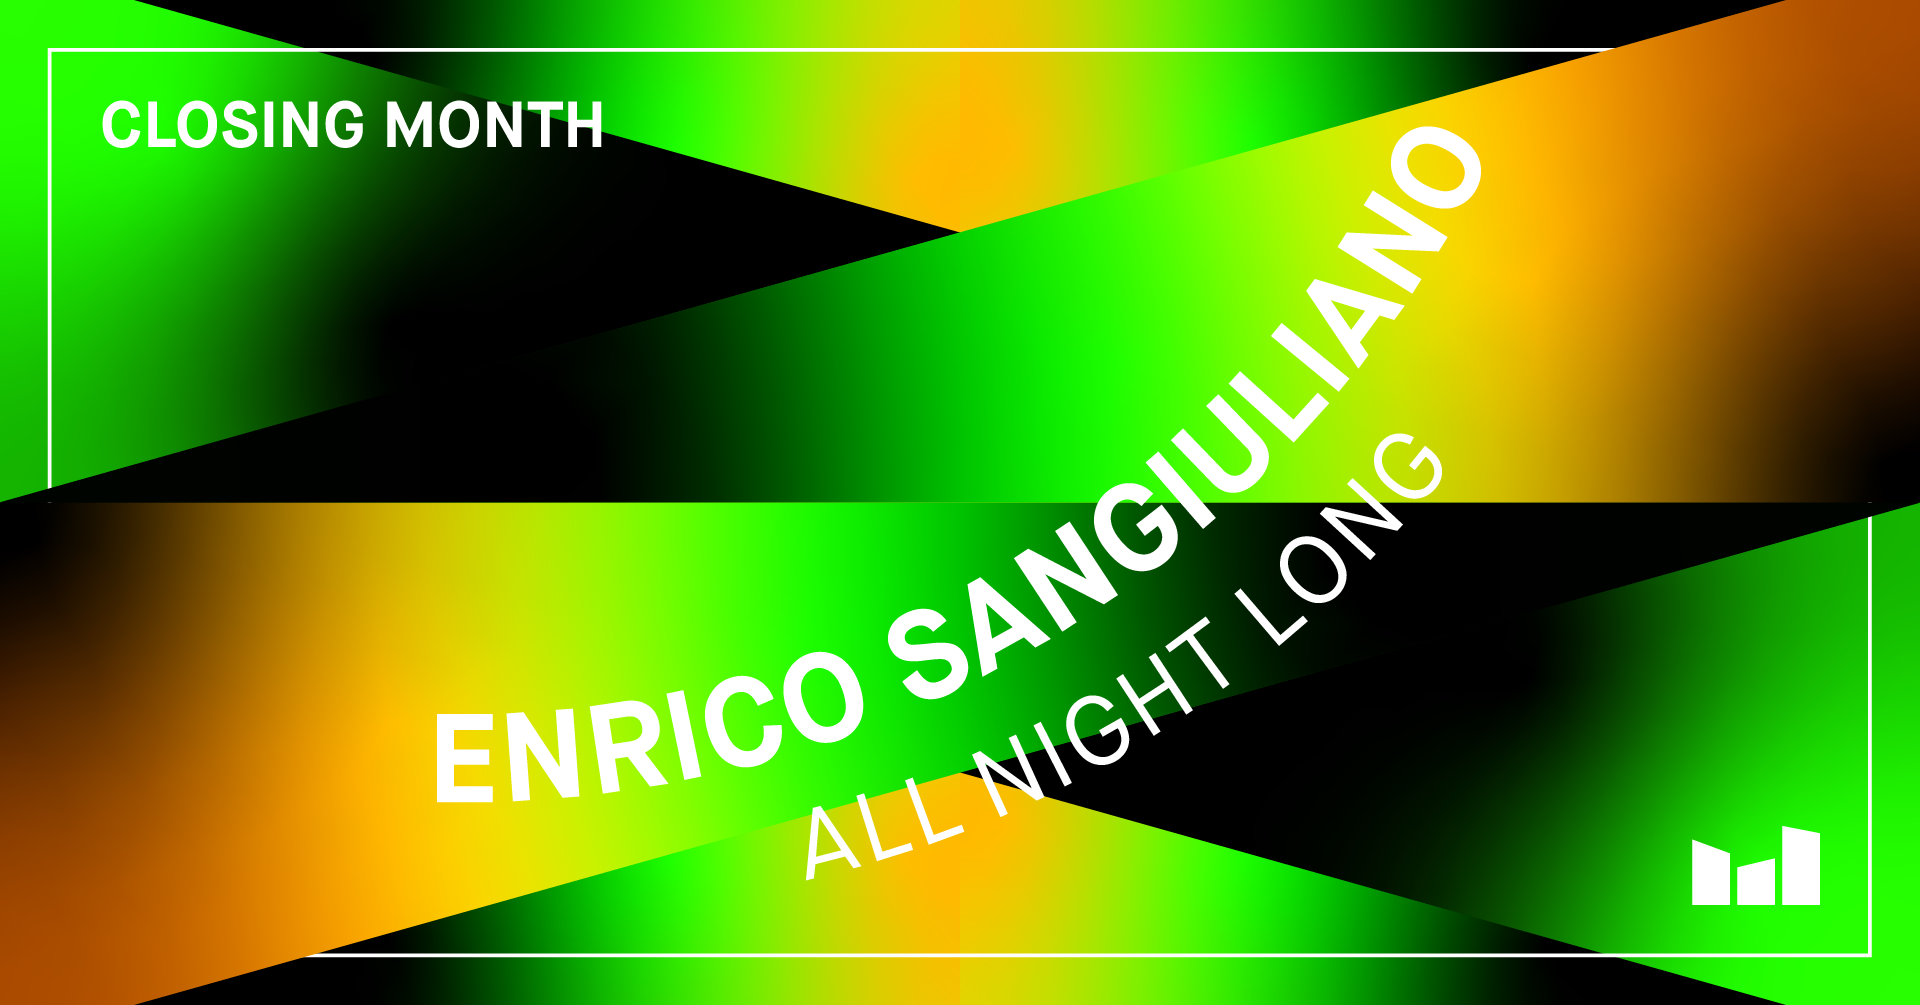 Closing Month - Enrico Sangiuliano presents SOLO #9 - De Marktkantine - Página frontal